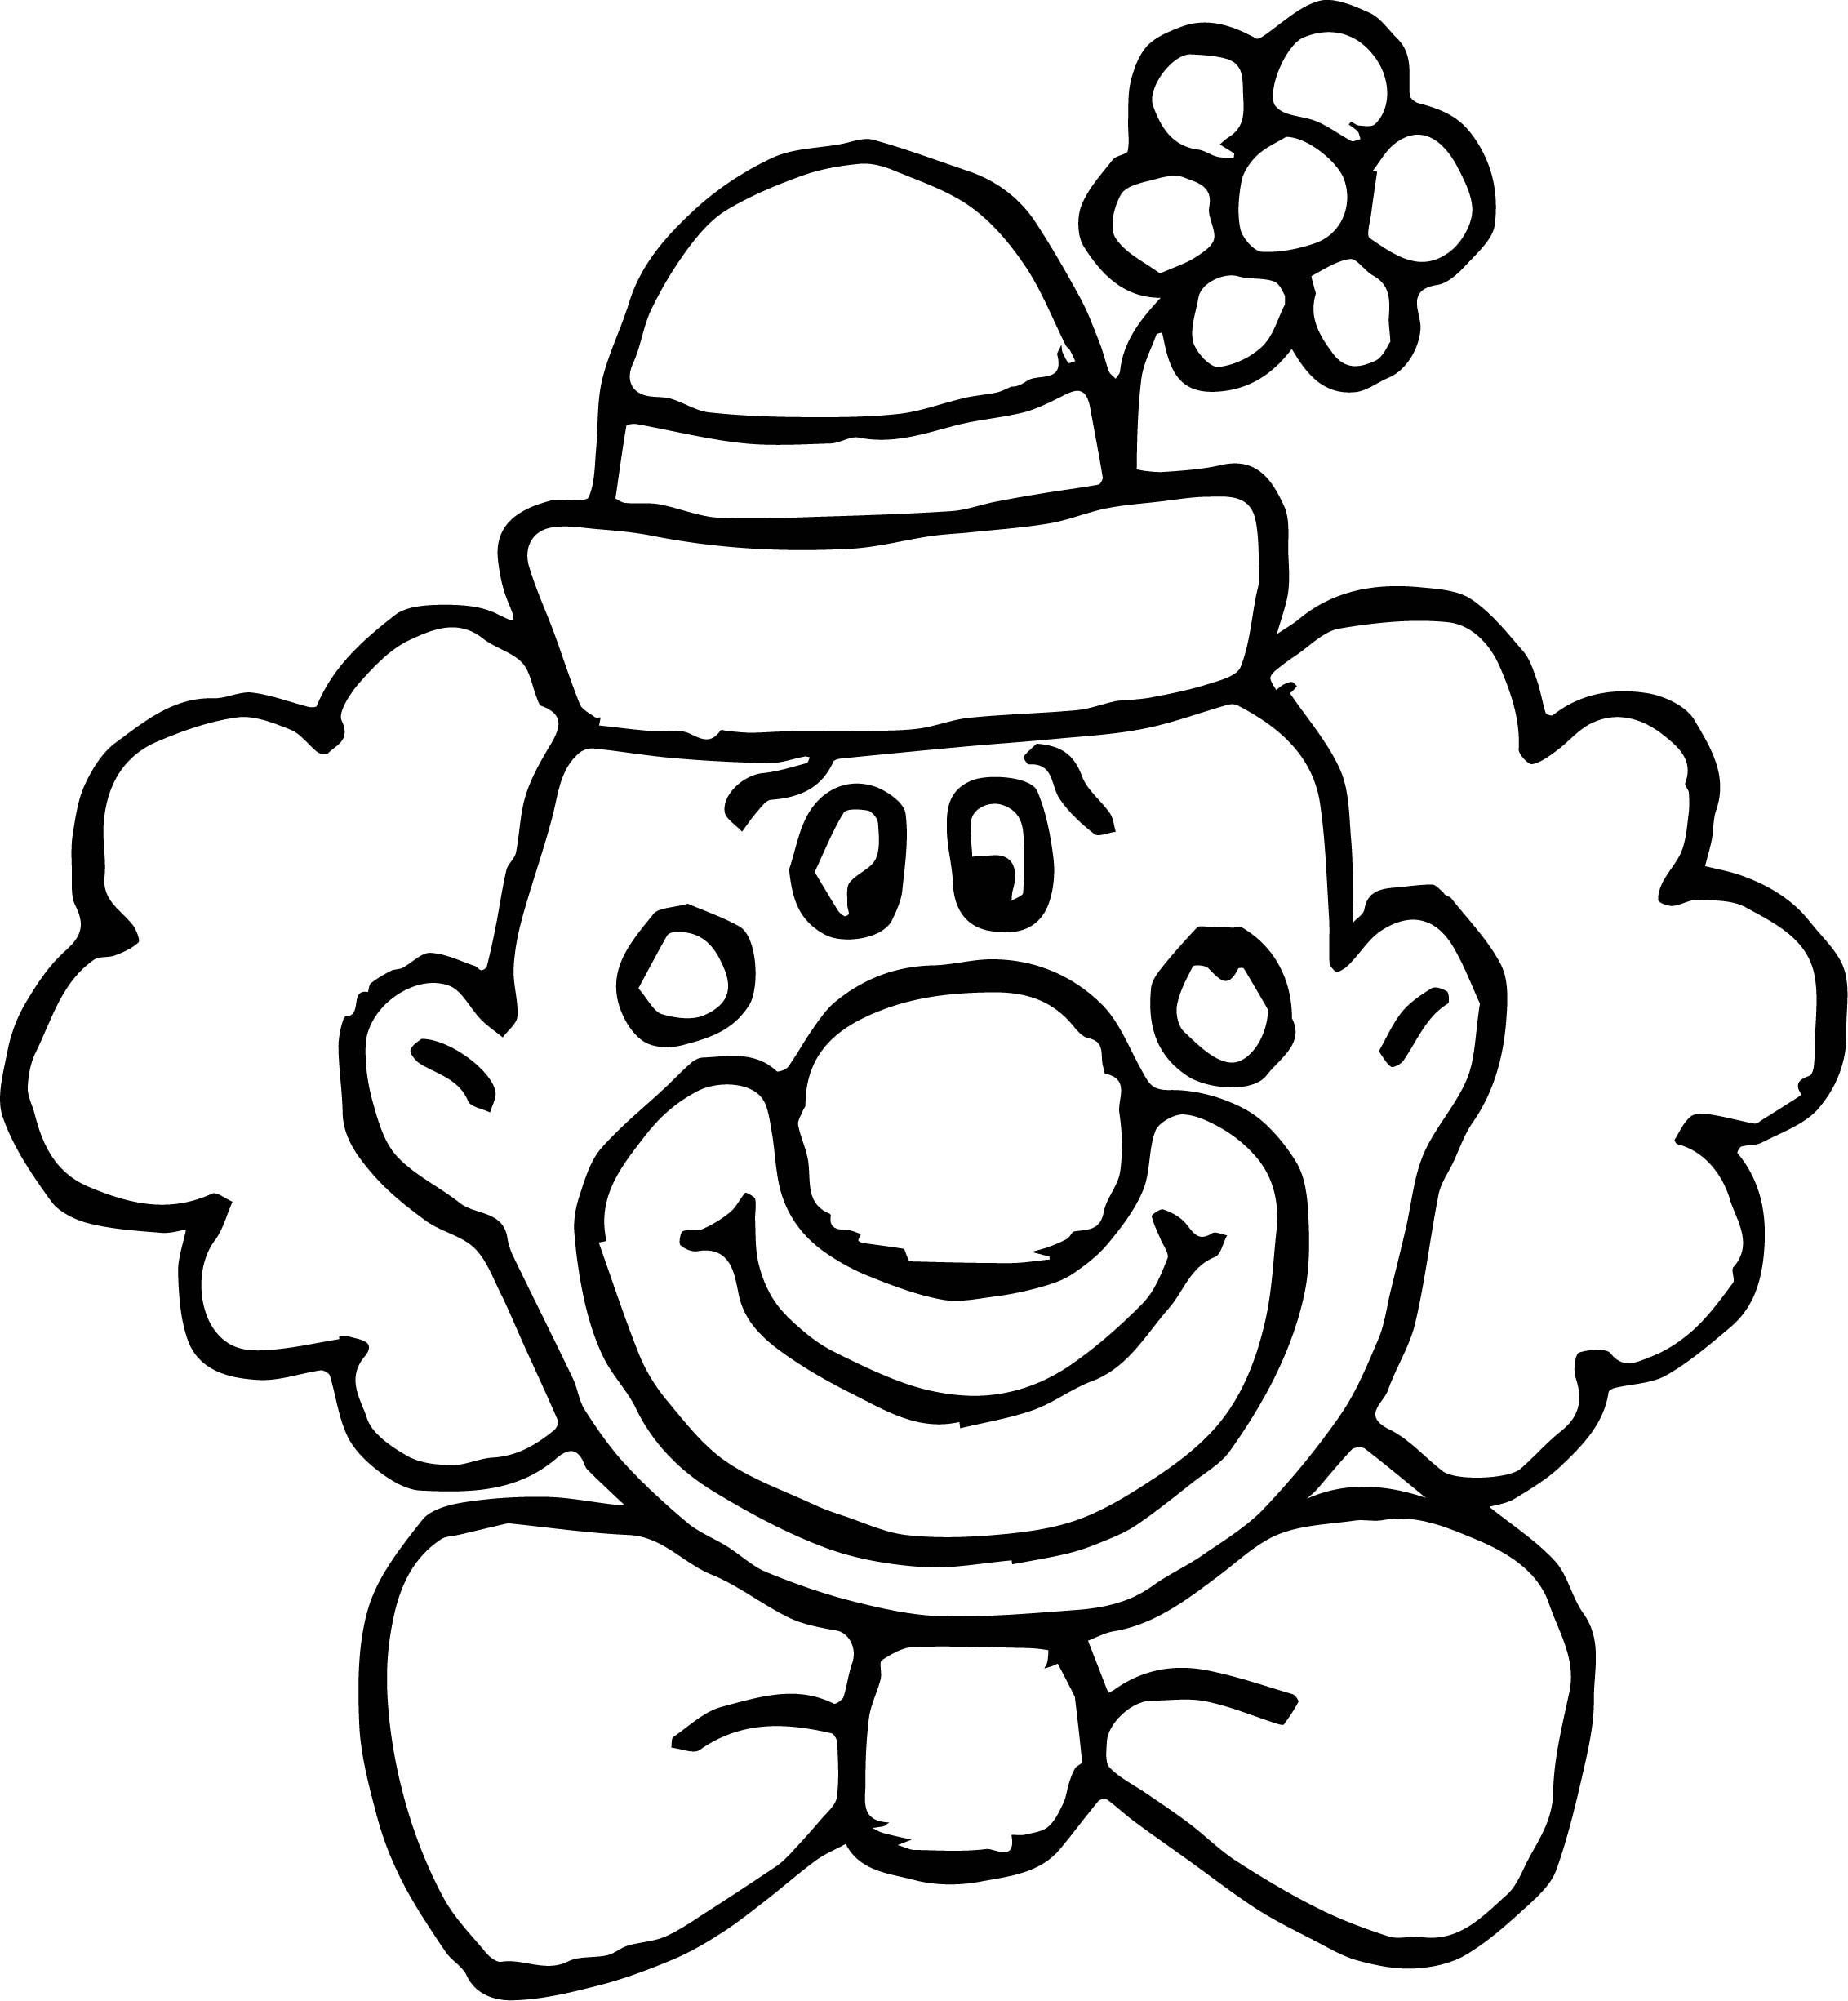 Клоуны раскраска для детей 5 лет. Клоун раскраска. Клоун раскраска для детей. Веселый клоун раскраска. Лицо клоуна раскраски для детей.